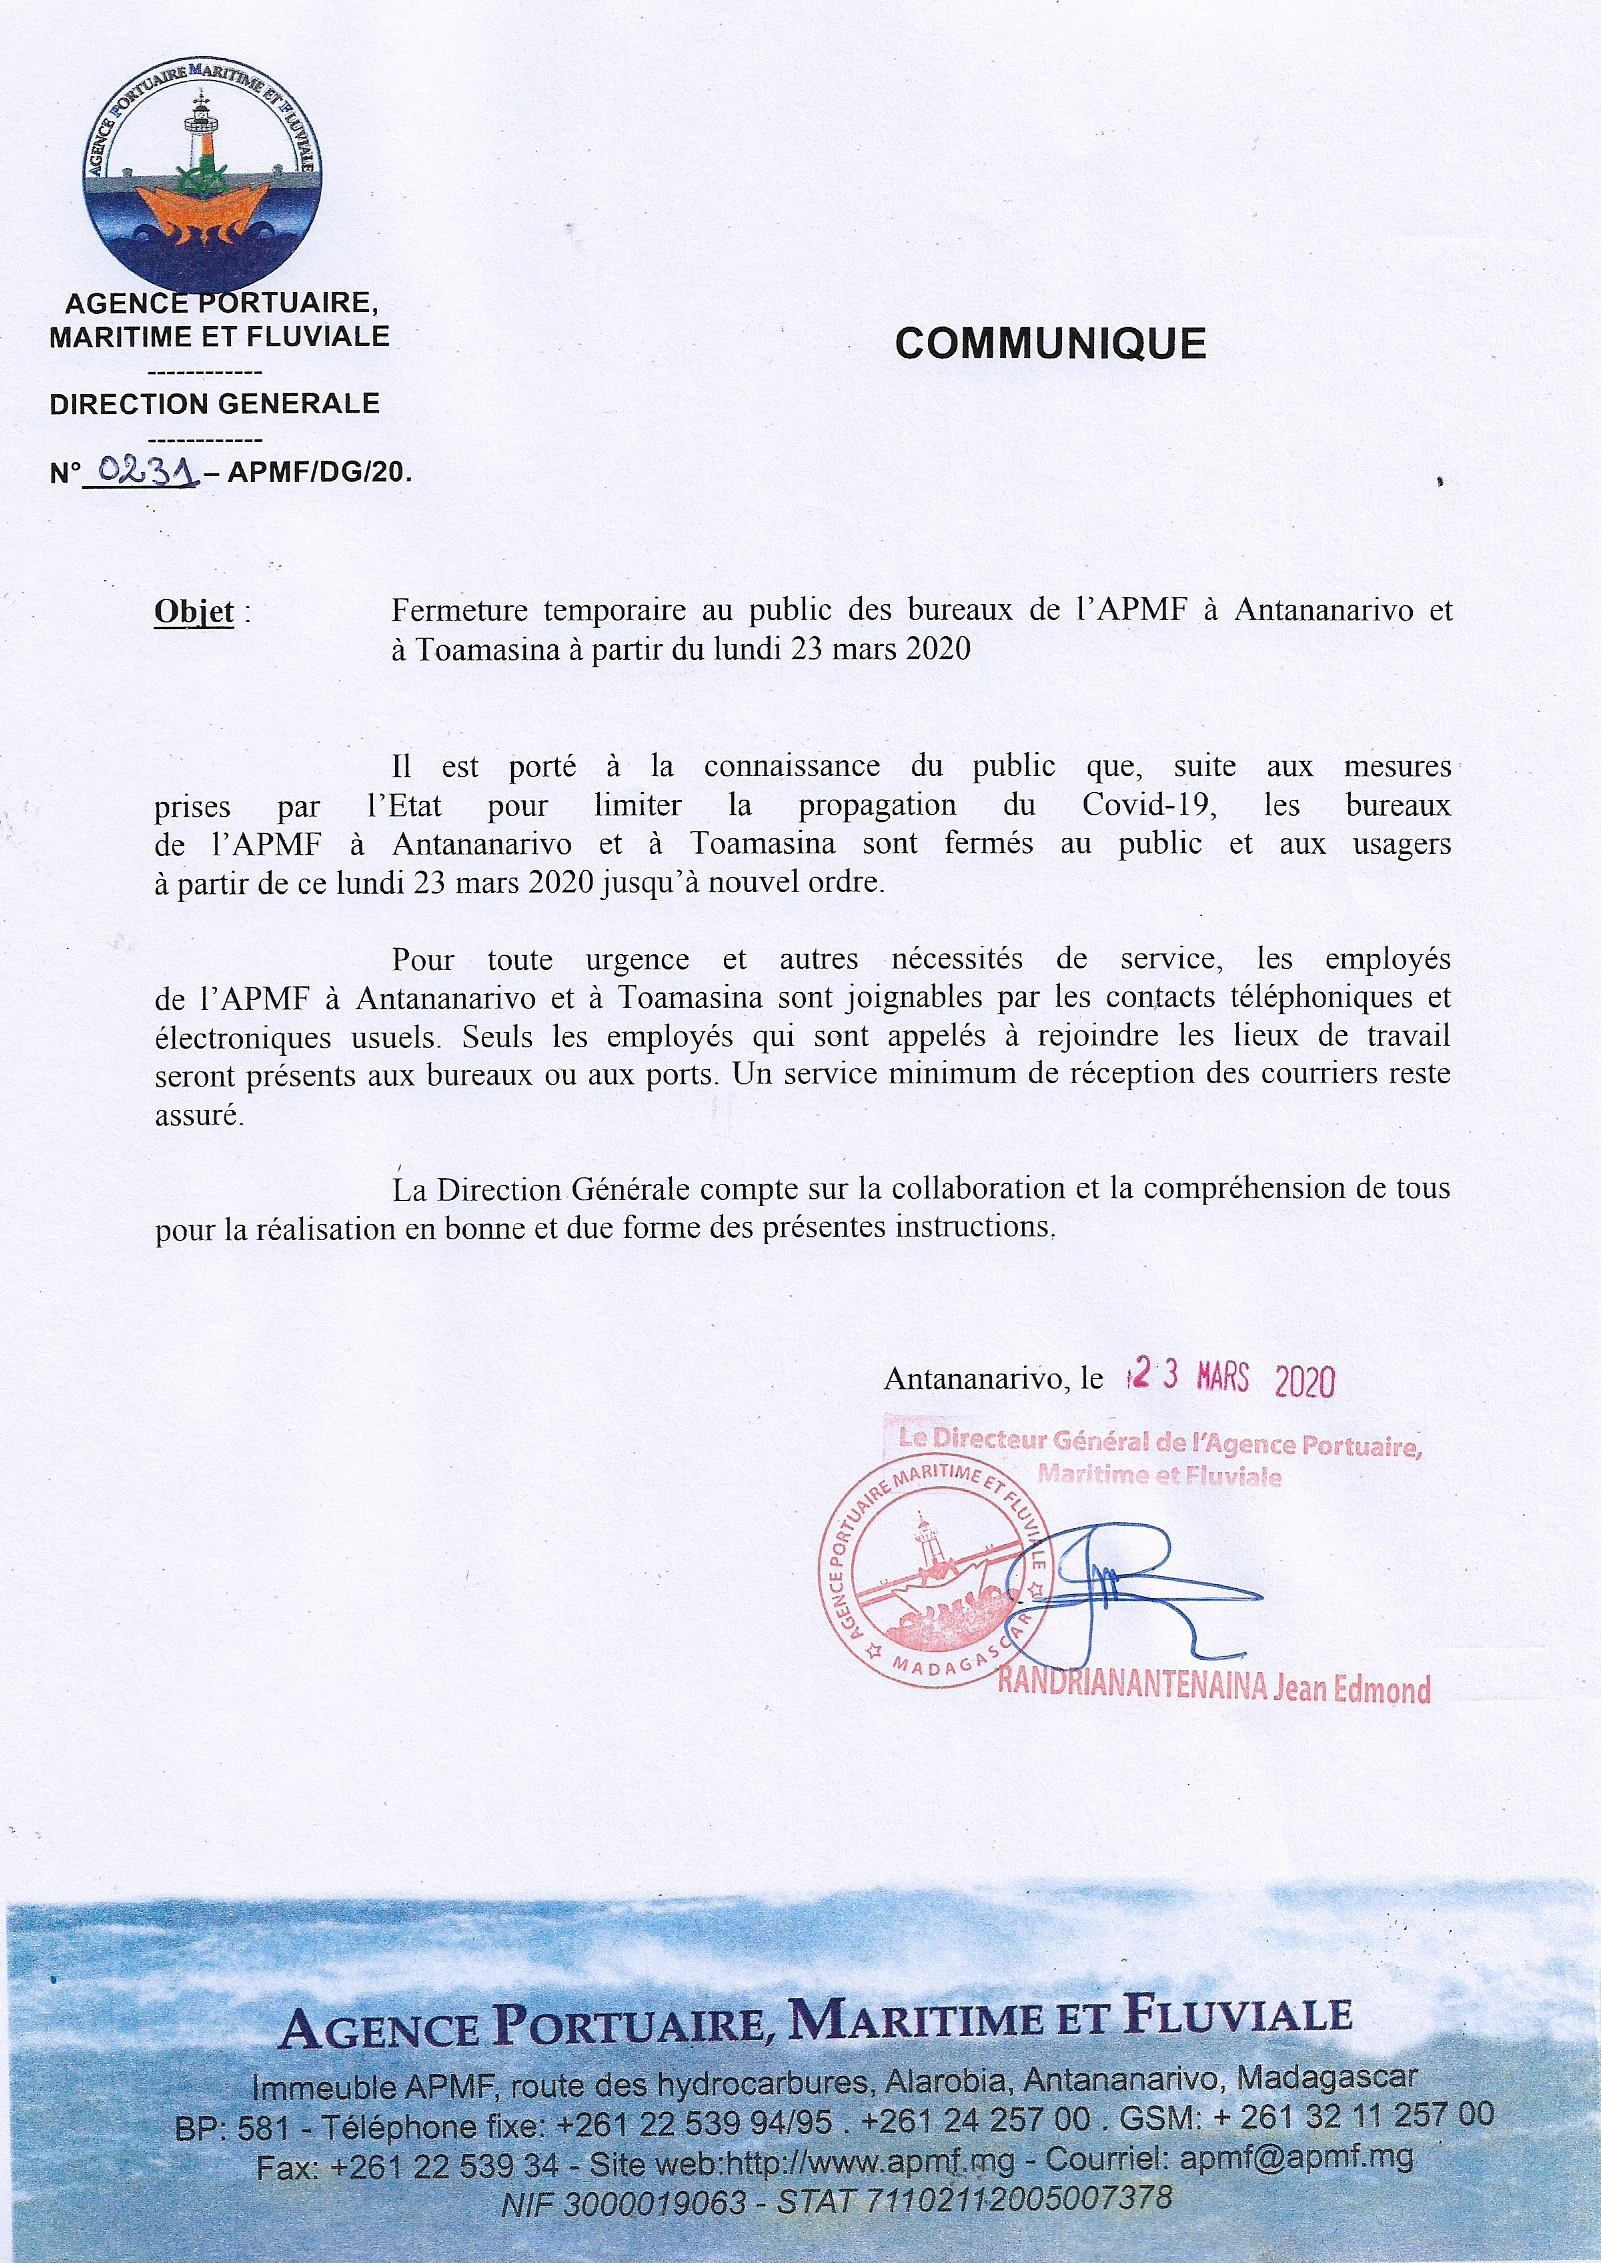 Fermeture temporaire des bureaux de l'APMF à Antananarivo et à Toamasina à partir de lundi 23 mars 2020